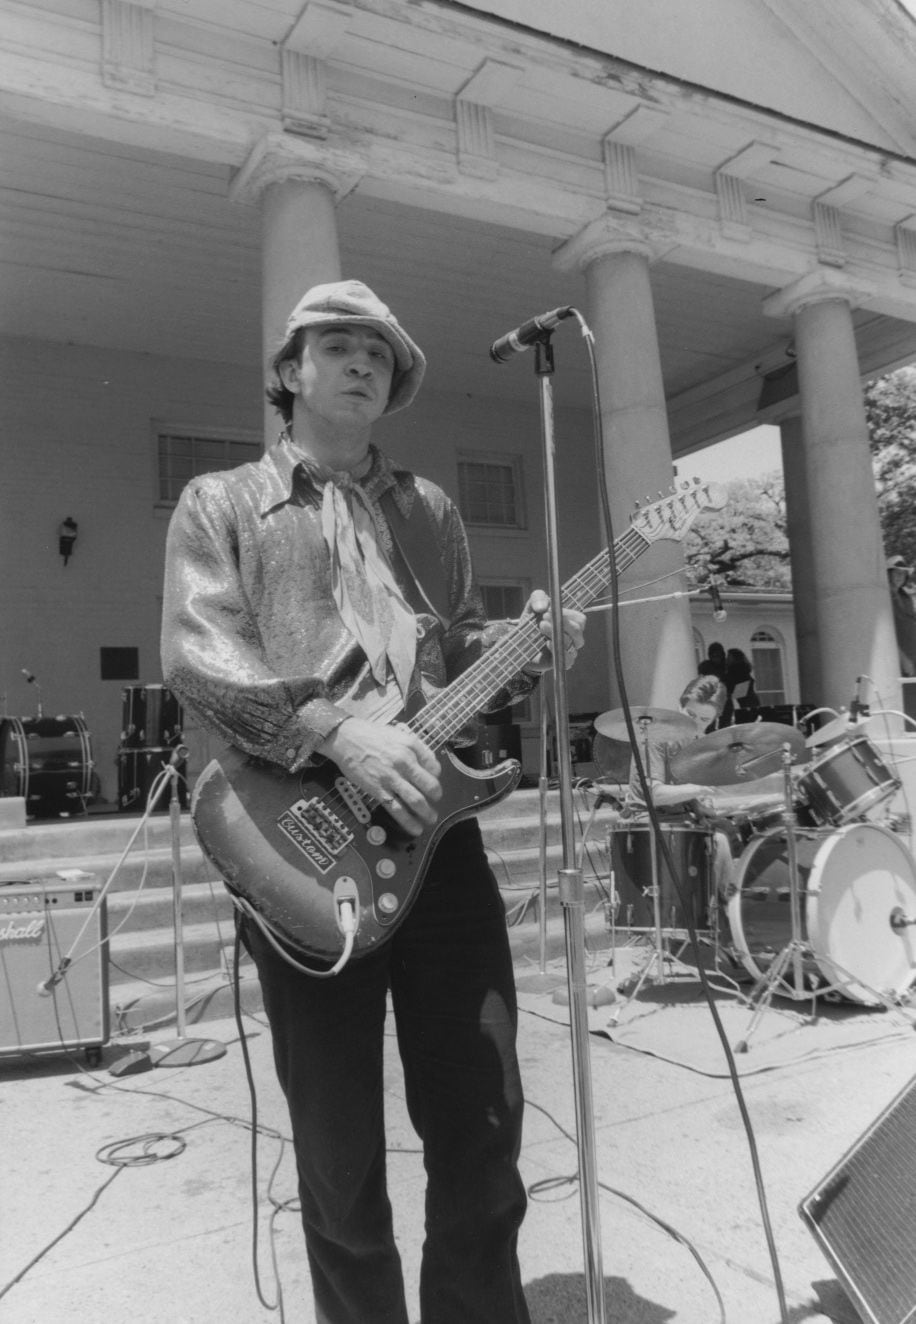 Stevie Ray Vaughan performed at a free Freddie King memorial concert in Lee Park in 1980.